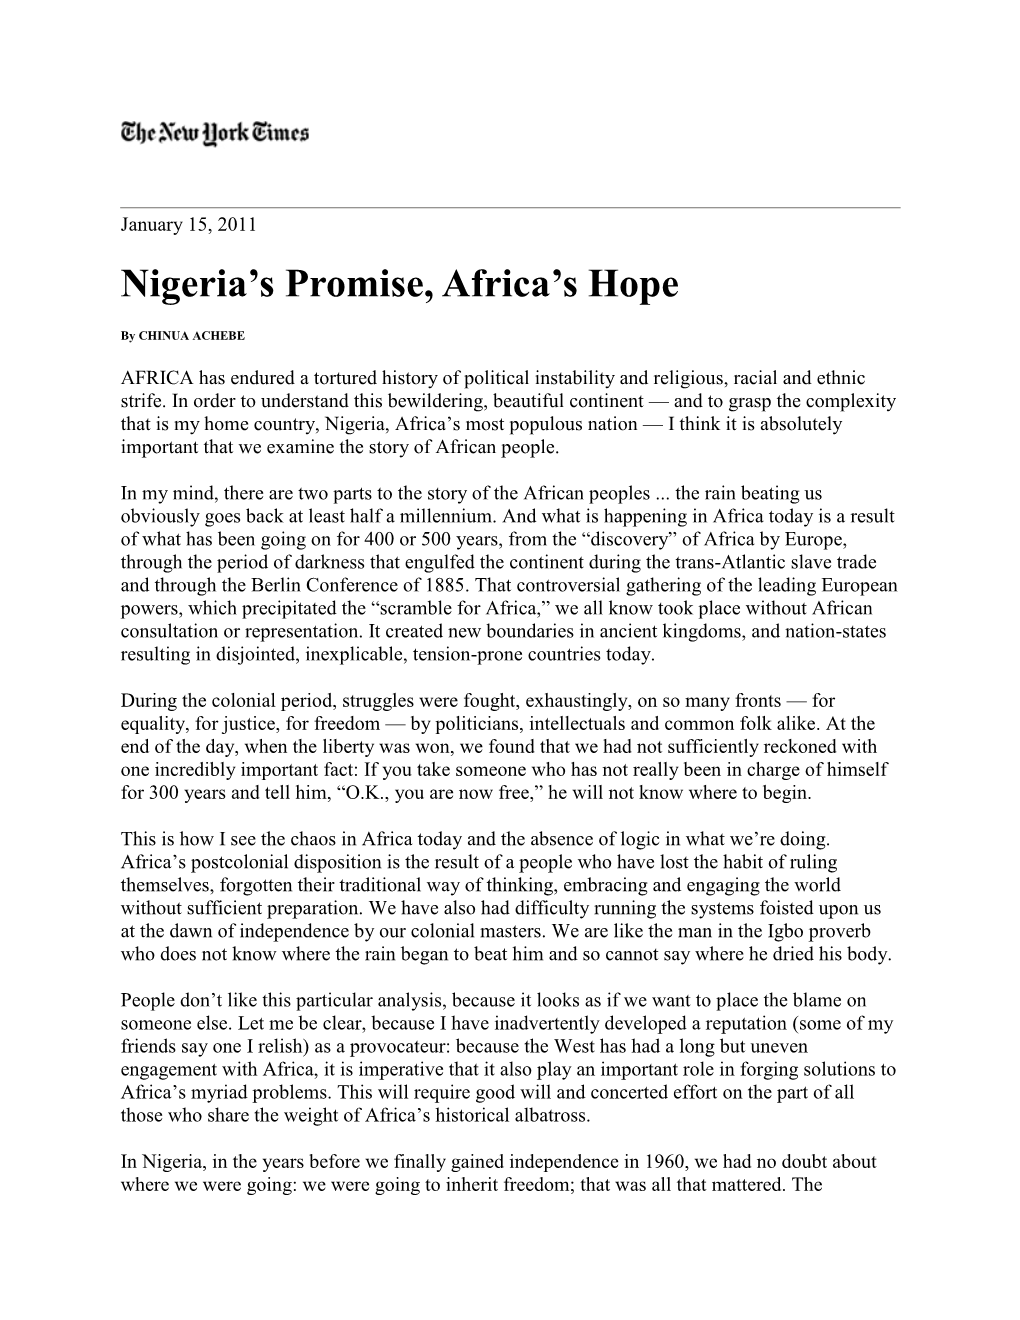 Nigeria's Promise, Africa's Hope